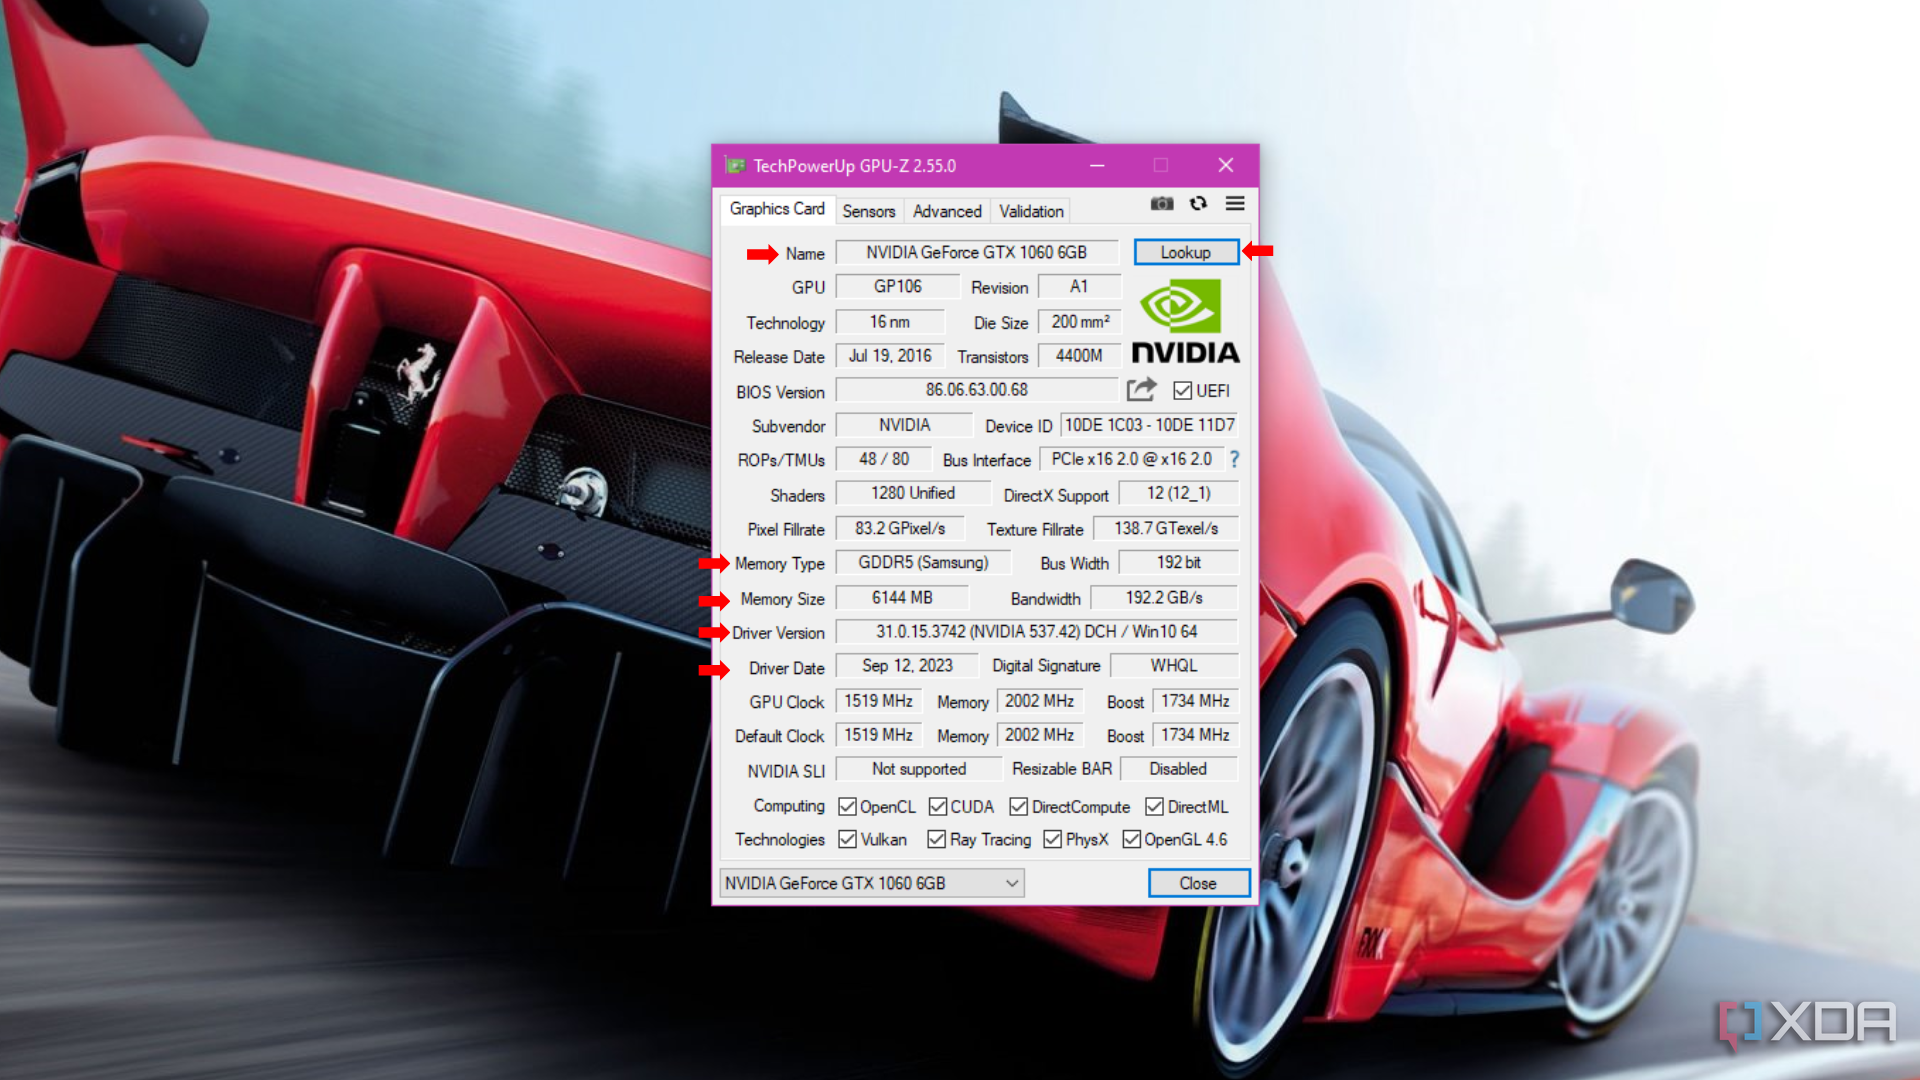 Окно приложения GPU-Z, открытое на вкладке «Видеокарта», показывает подробную информацию о видеокарте NVIDIA GeForce GTX 1060, включая ее название, графический процессор и сведения о технологии.